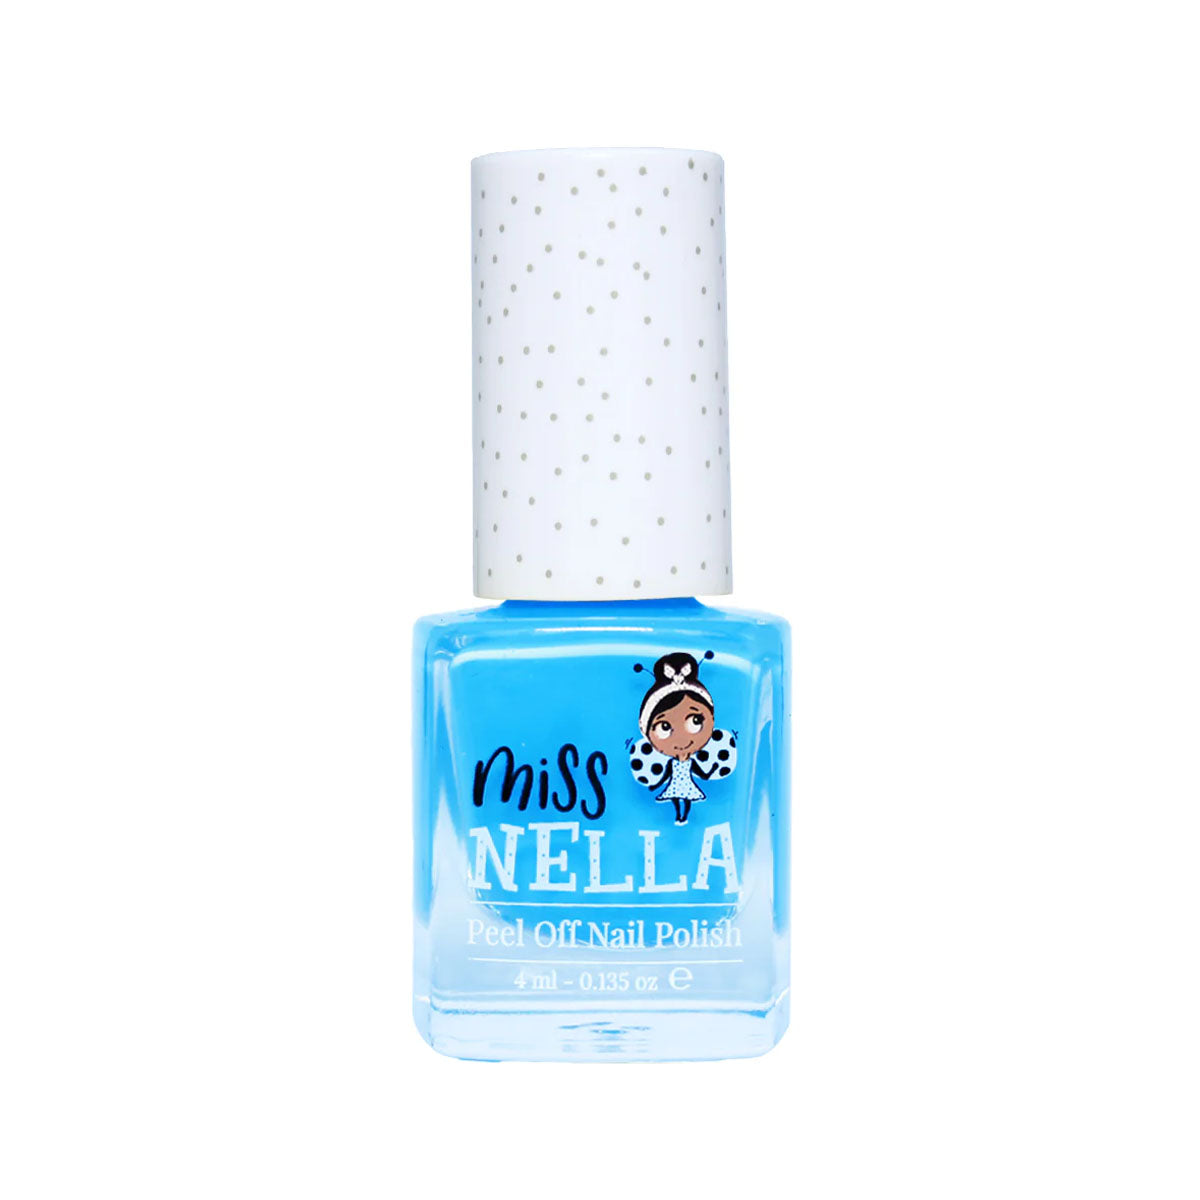 Laat de nageltjes van jouw kindje shinen met de nagellak mermaid blue van het merk Miss Nella. De peel off nagellak is speciaal ontworpen voor kinderen en is vrij van chemicaliën. In verschillende kleuren. VanZus